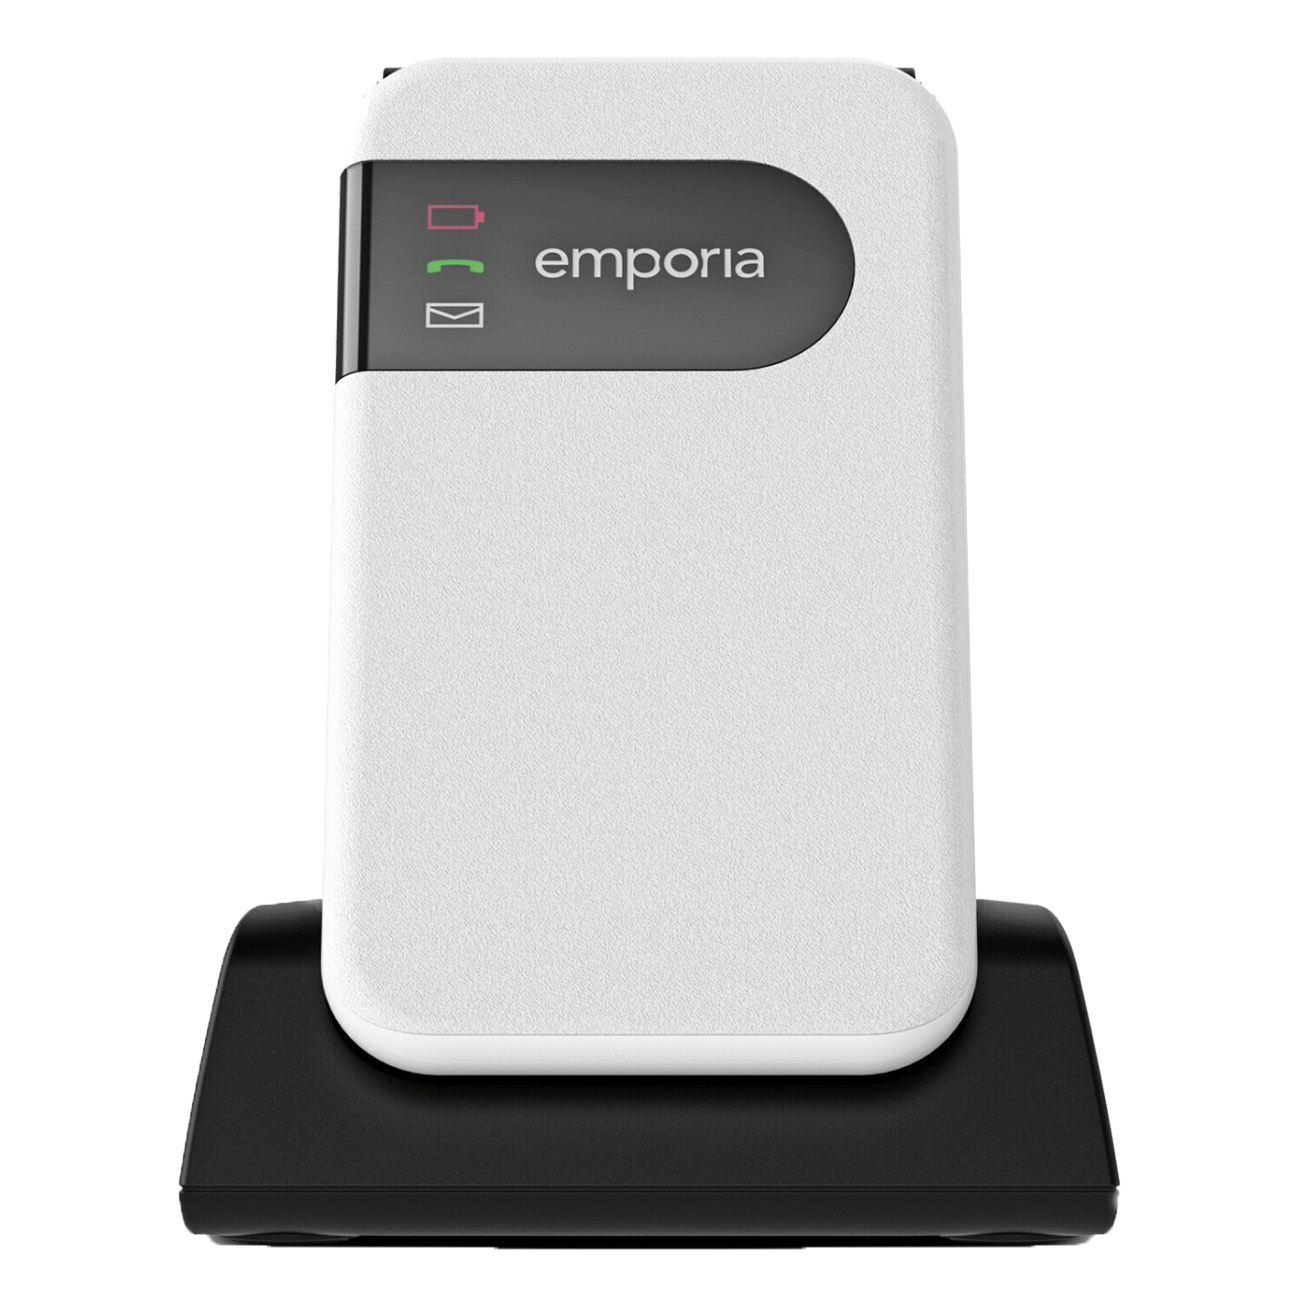 Emporia SIMPLICITYglam 4G | Mobiltelefon | Nano Sim | Bluetooth 5.0 | LTE (4G) | Farbdisplay | 480 Min. Spreichzeit | 260 Std. | Stand-by-Zeit von Emporia